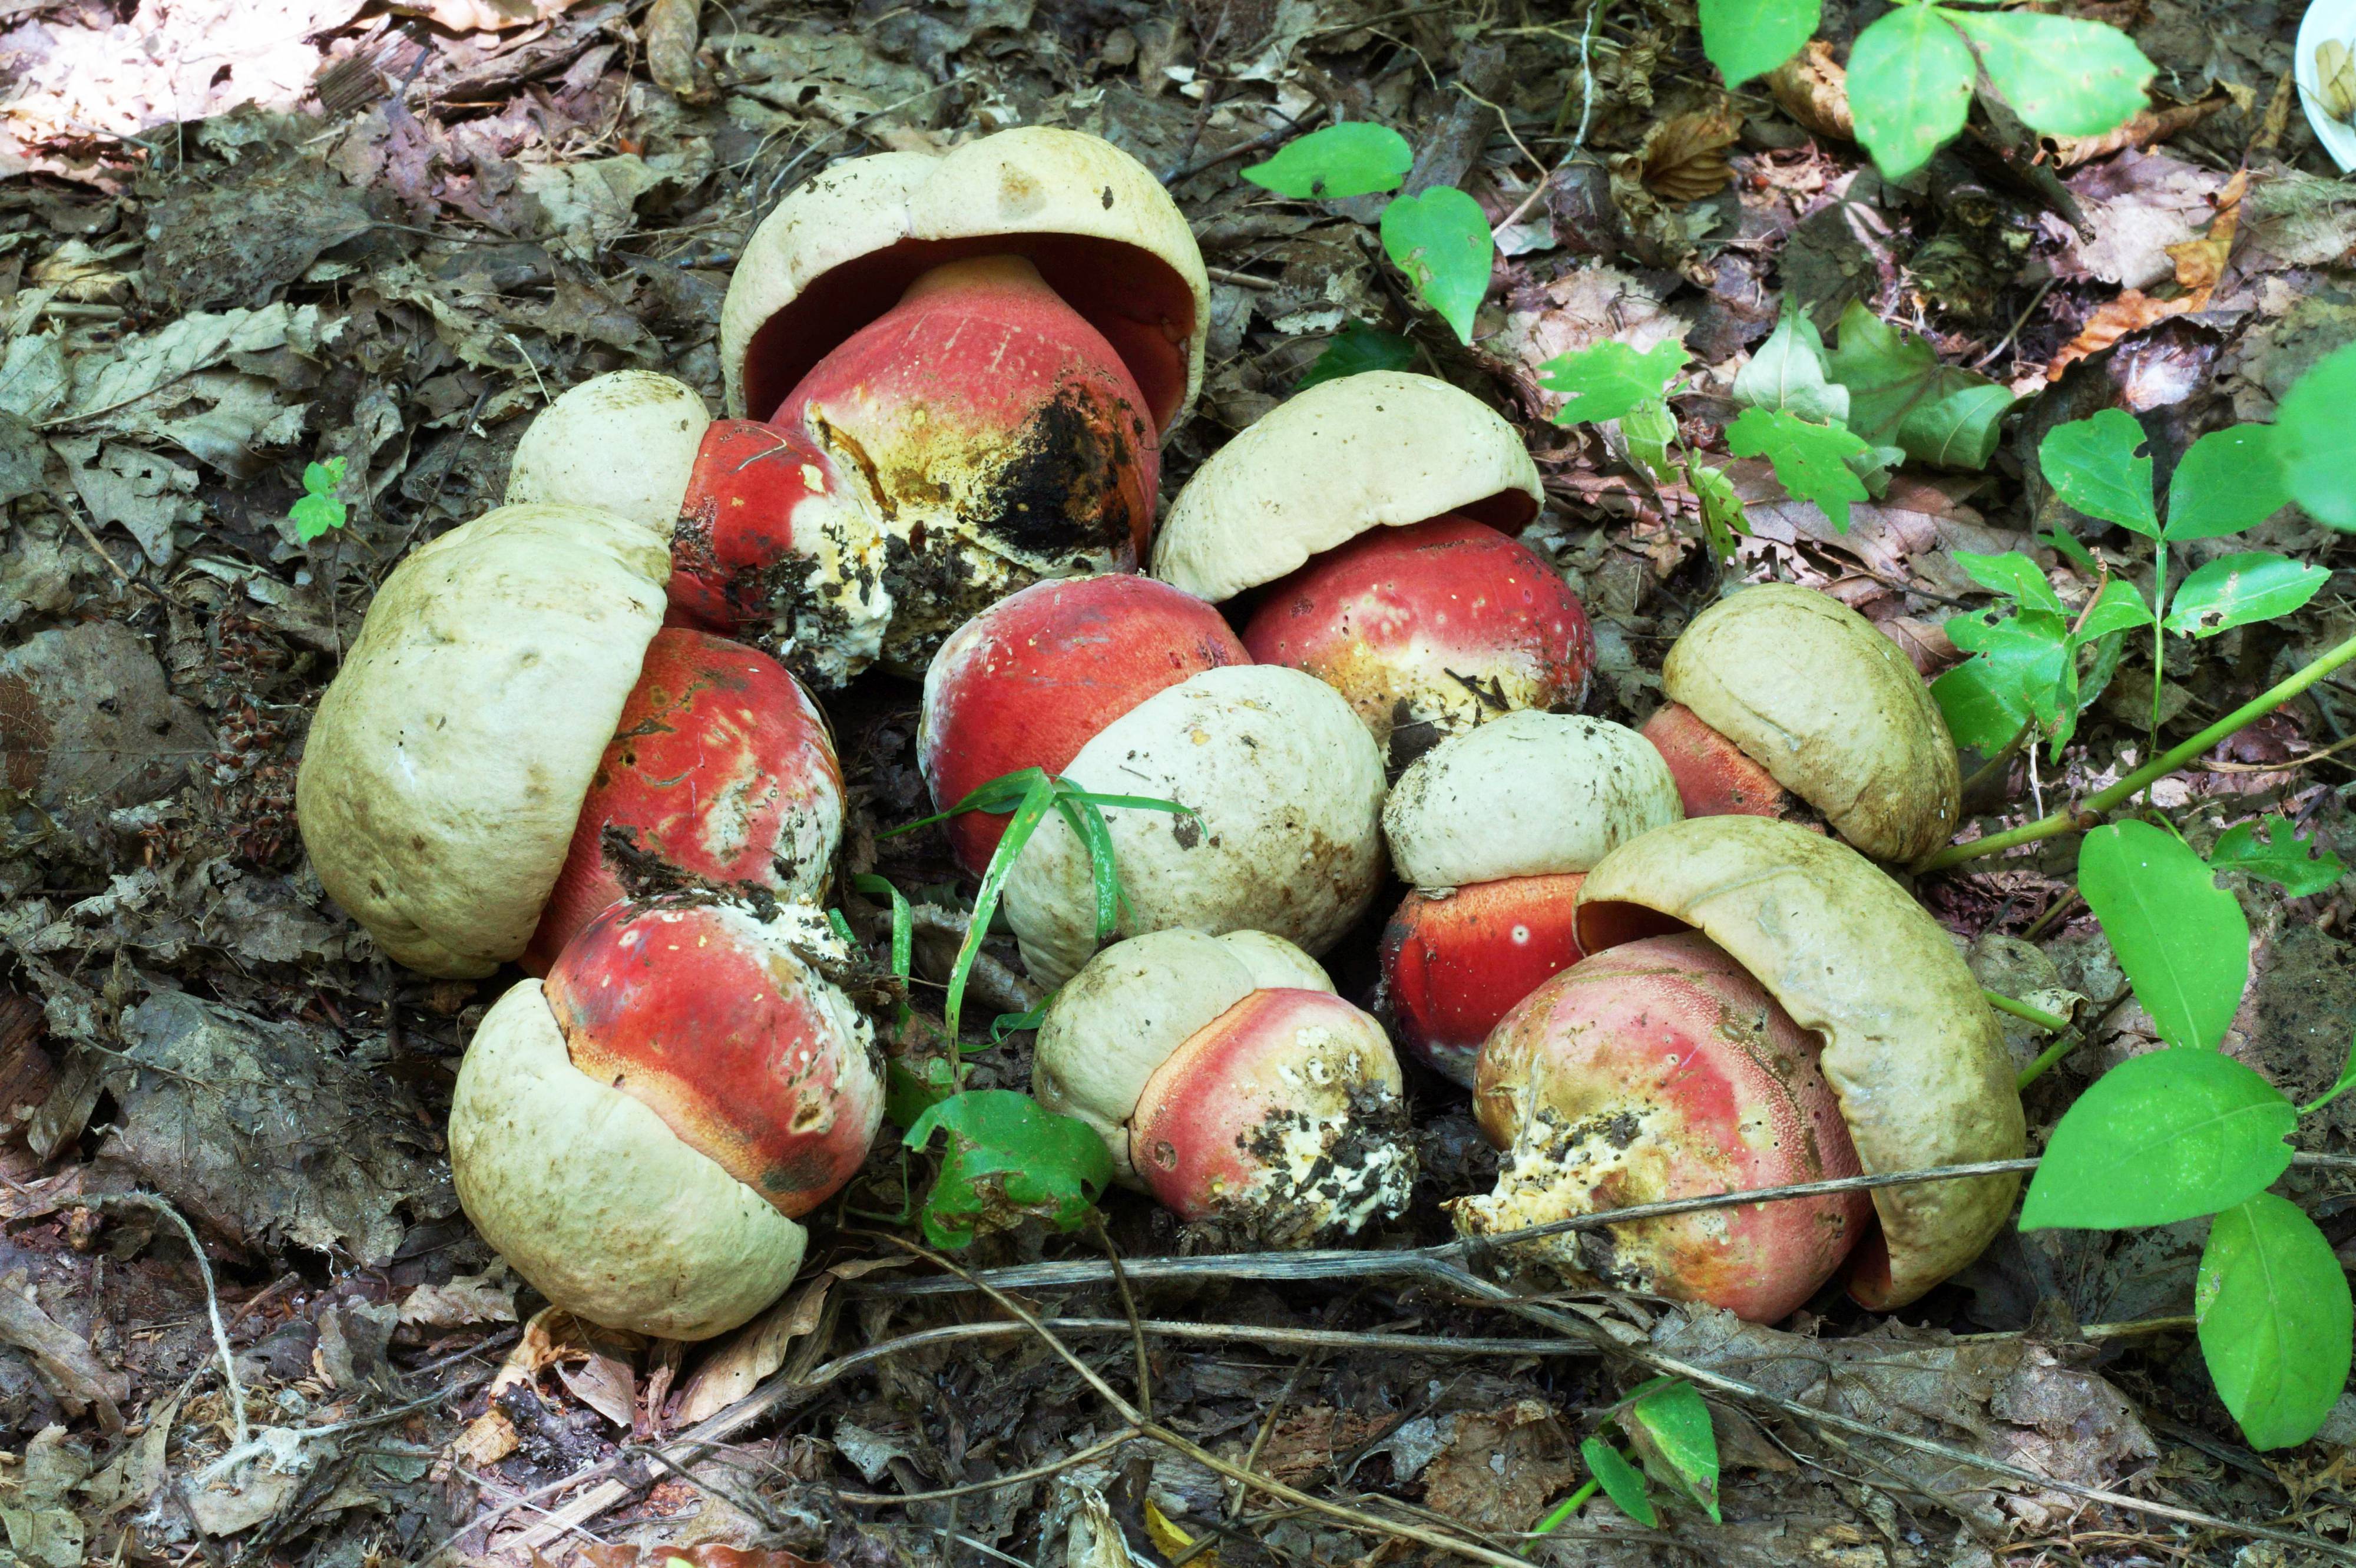 Какие грибы занесены в красную книгу россии? список, характеристика и фото